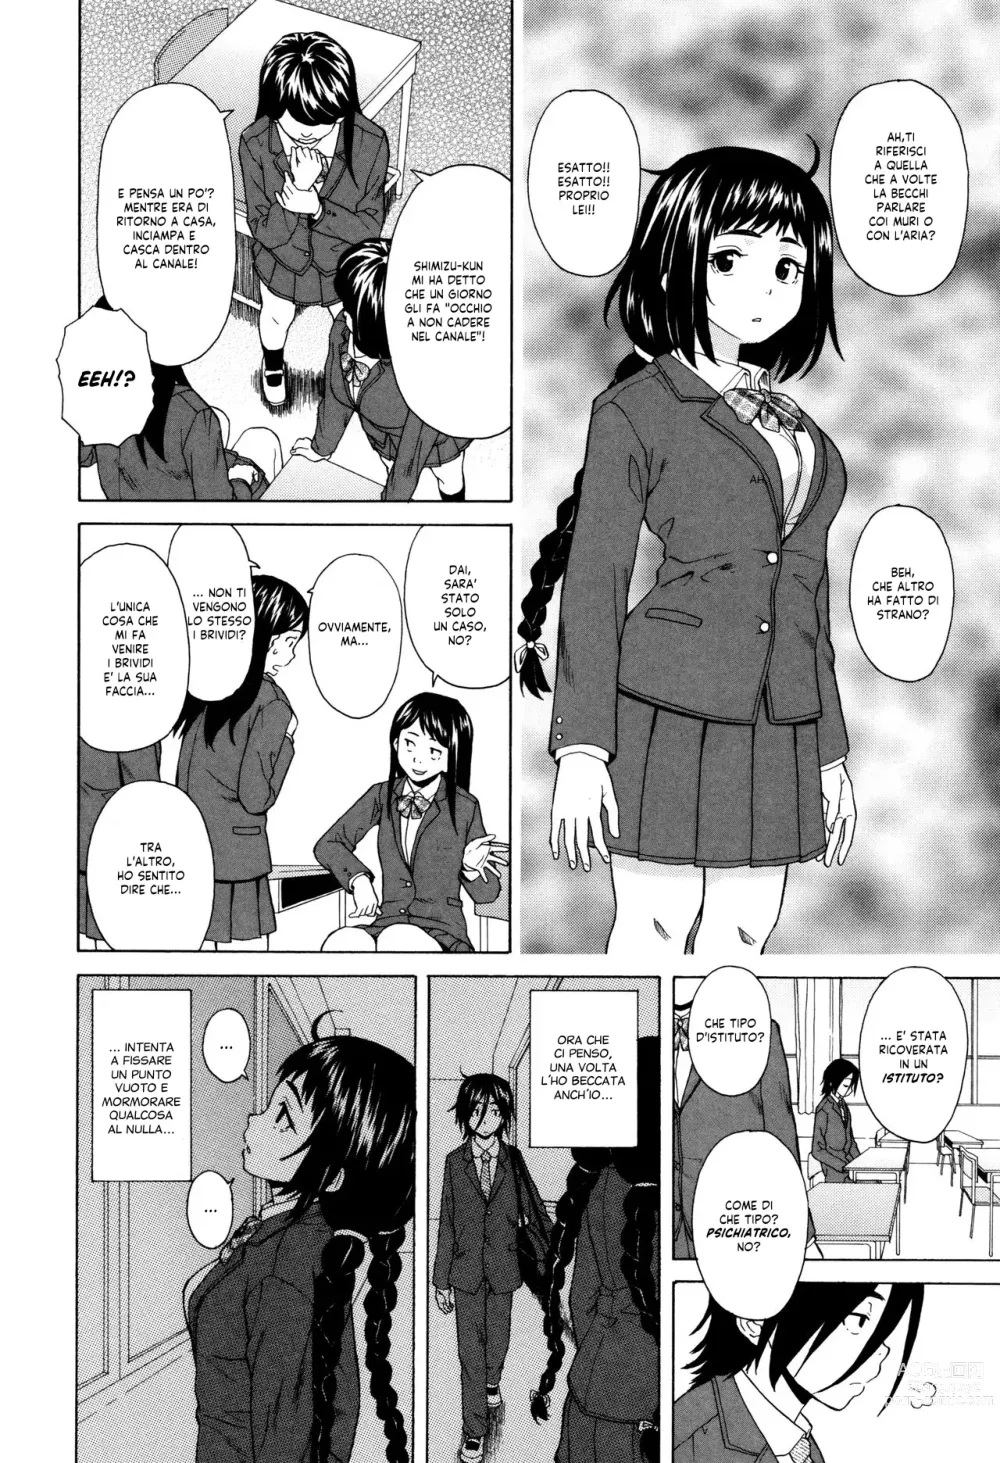 Page 9 of manga Segreti, Suicidi e Sorelle (decensored)